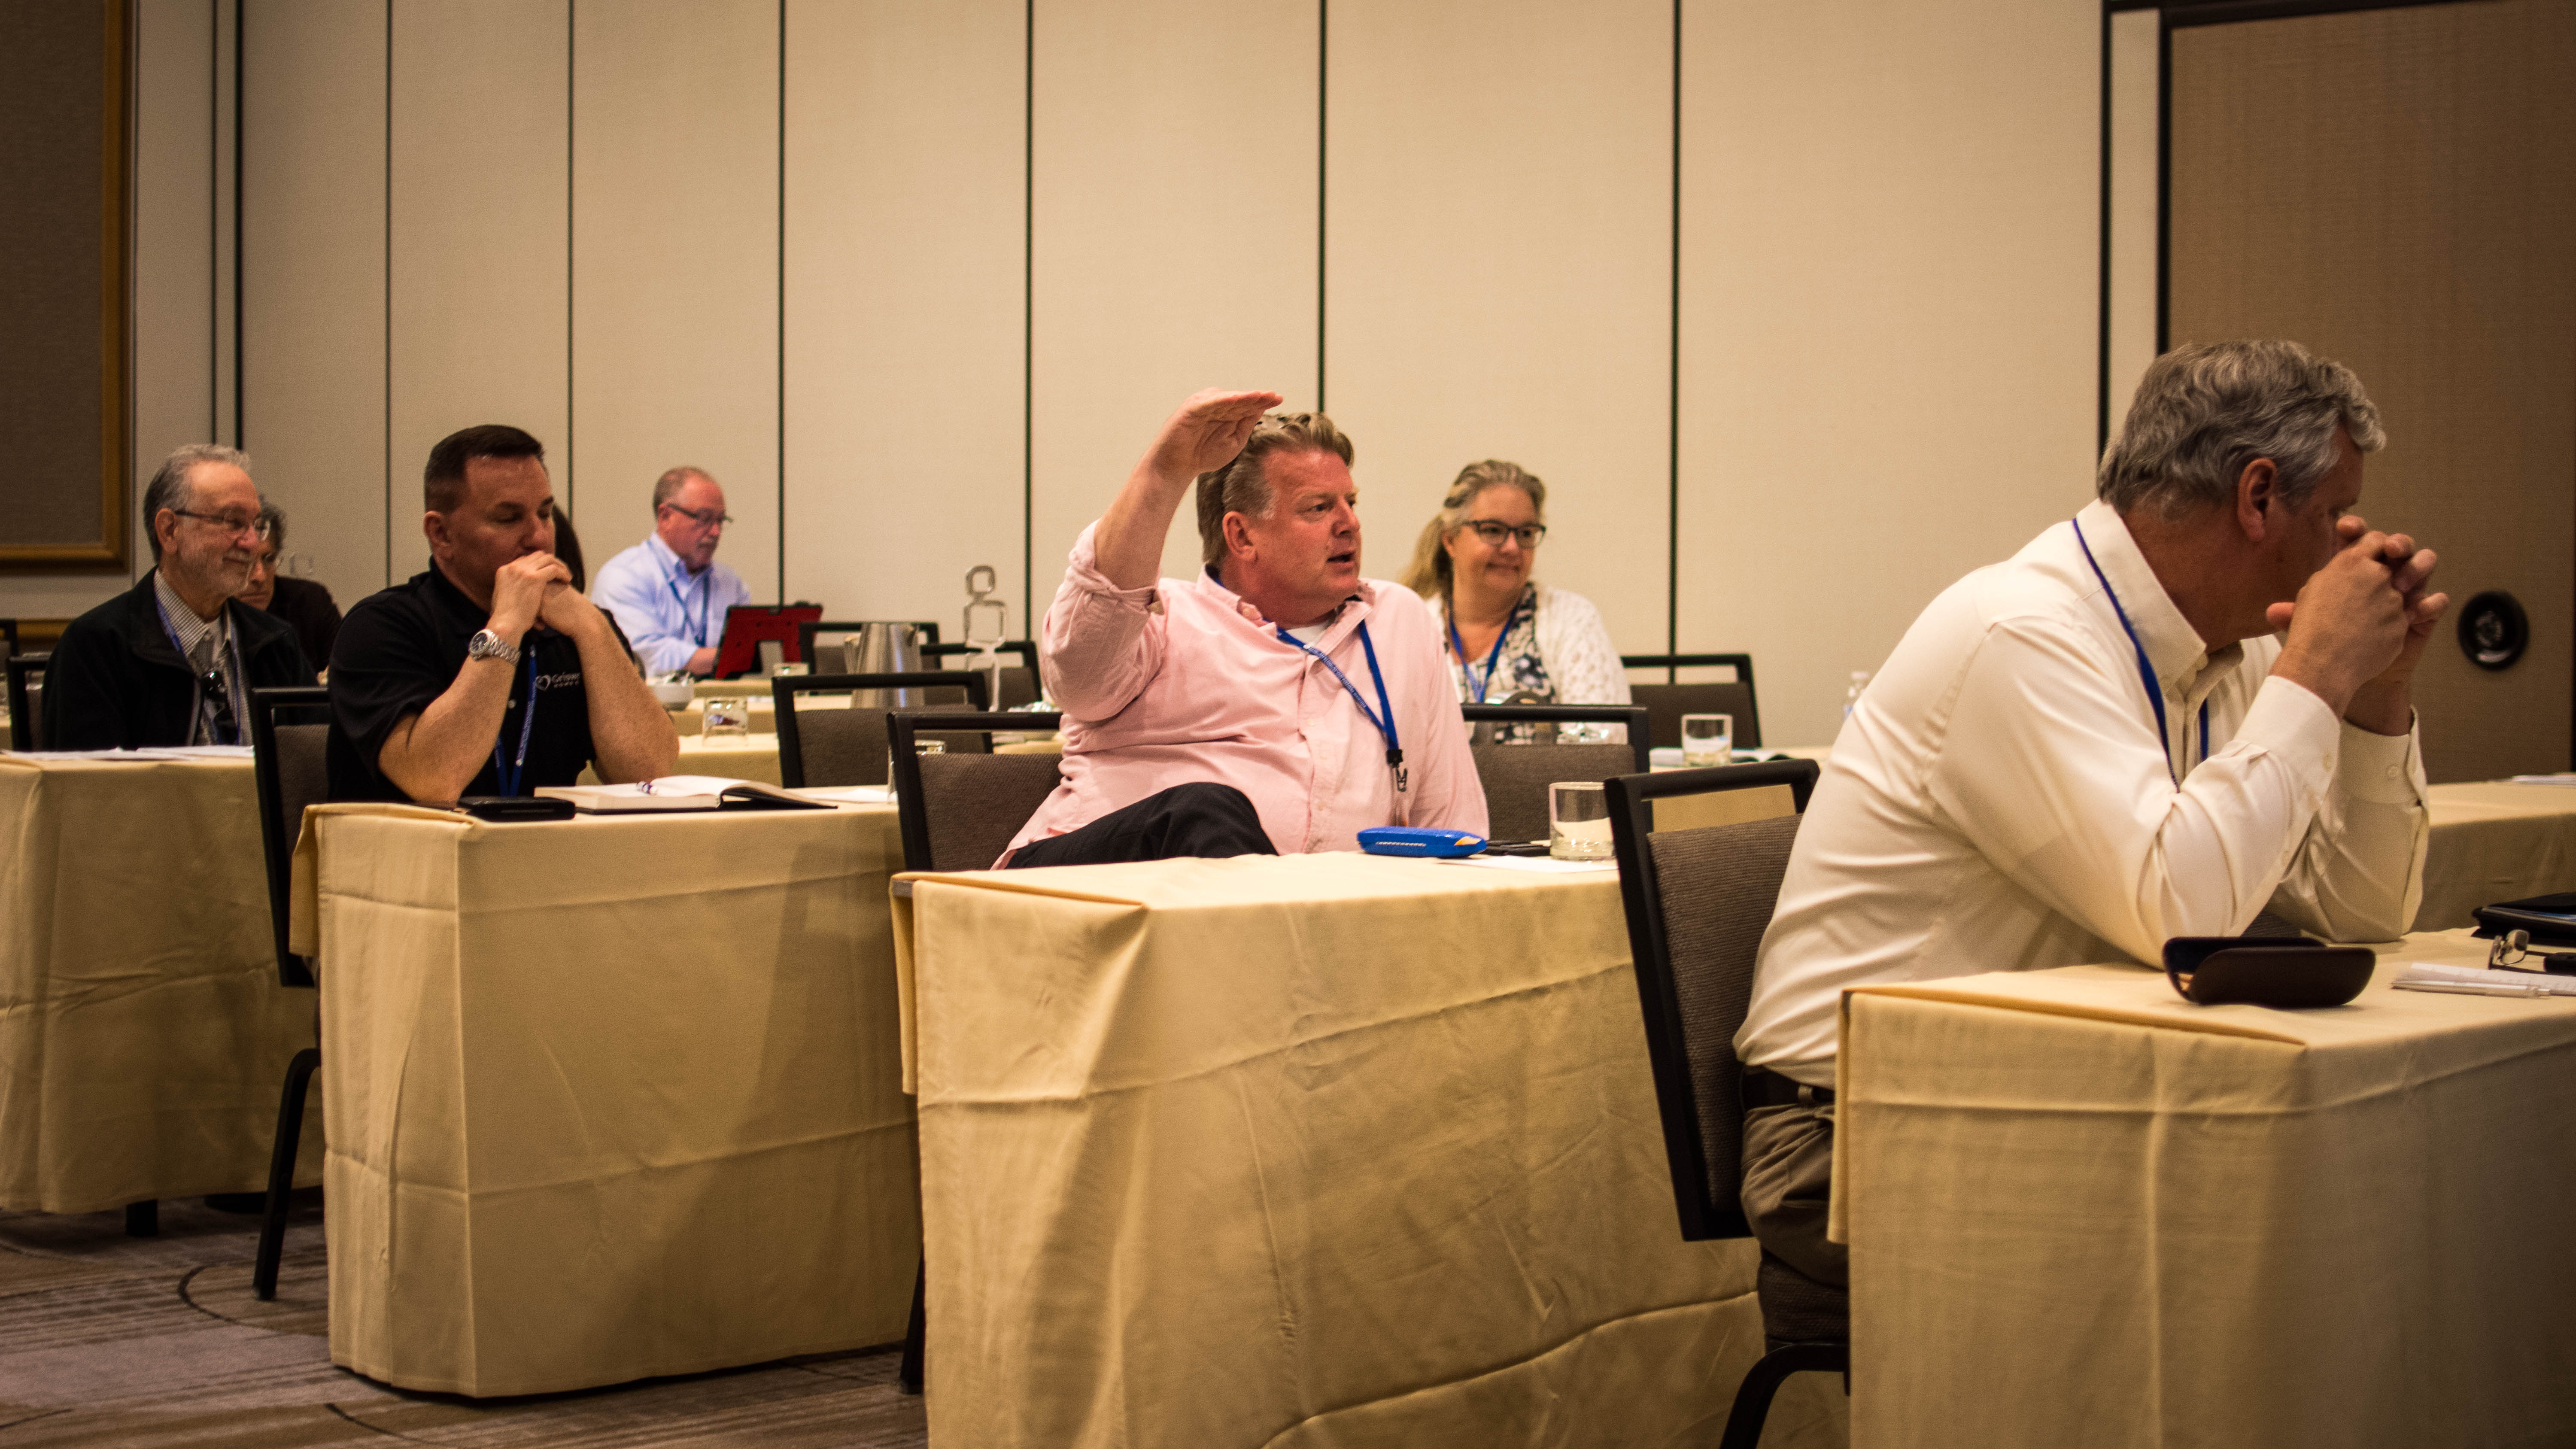 Una foto muestra a Brian Schnell levantando la mano con vehemencia mientras habla con otros abogados franquiciados durante una reunión.